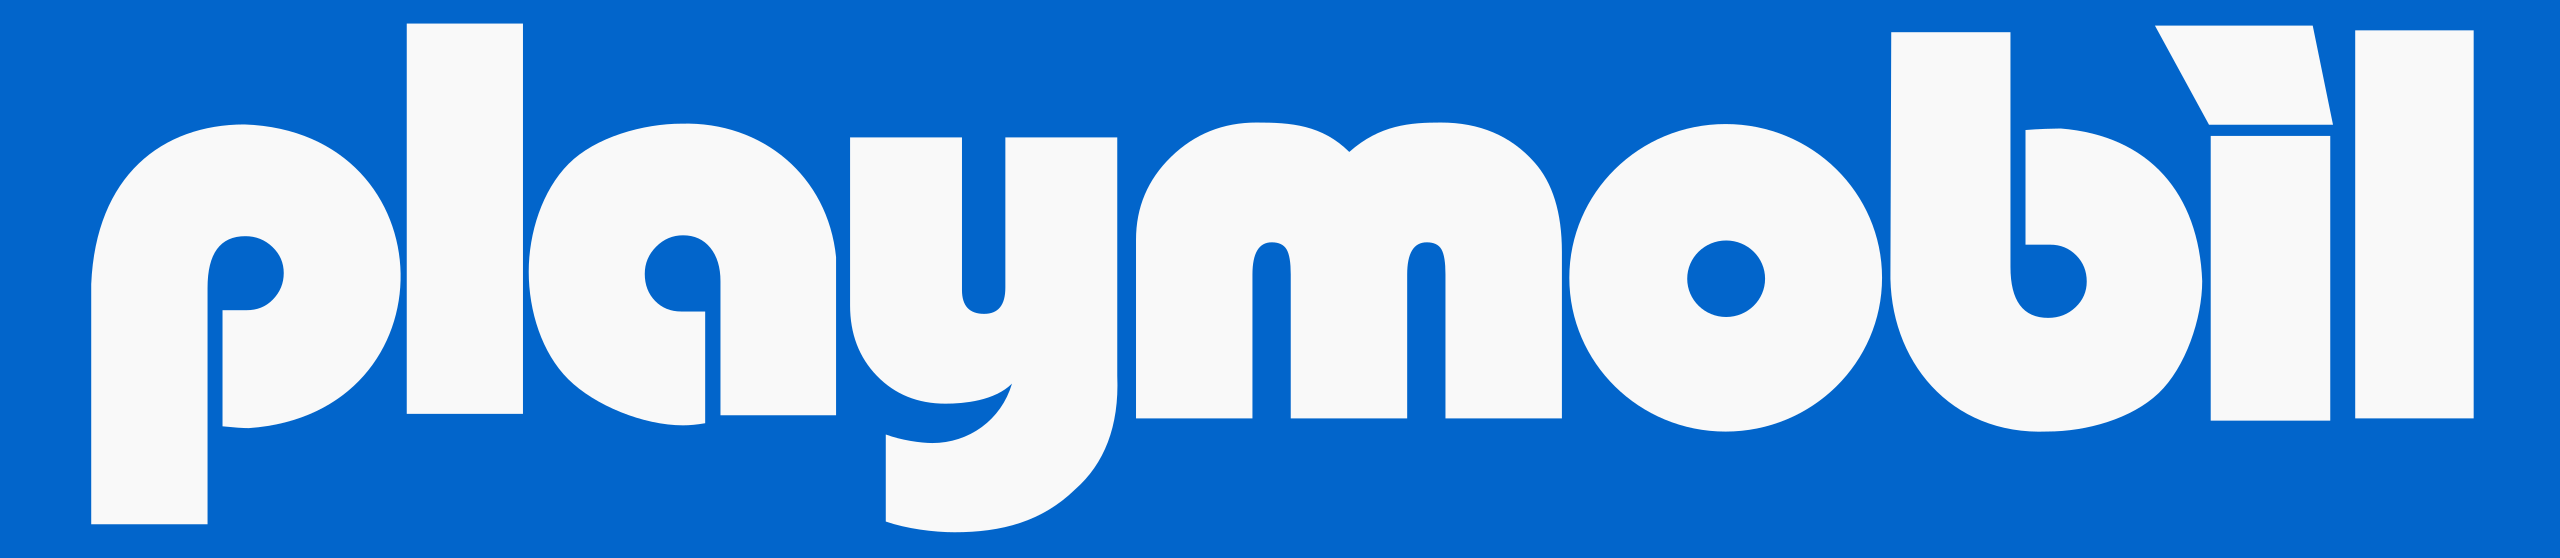 logotipo de la marca de juguetes playmobil